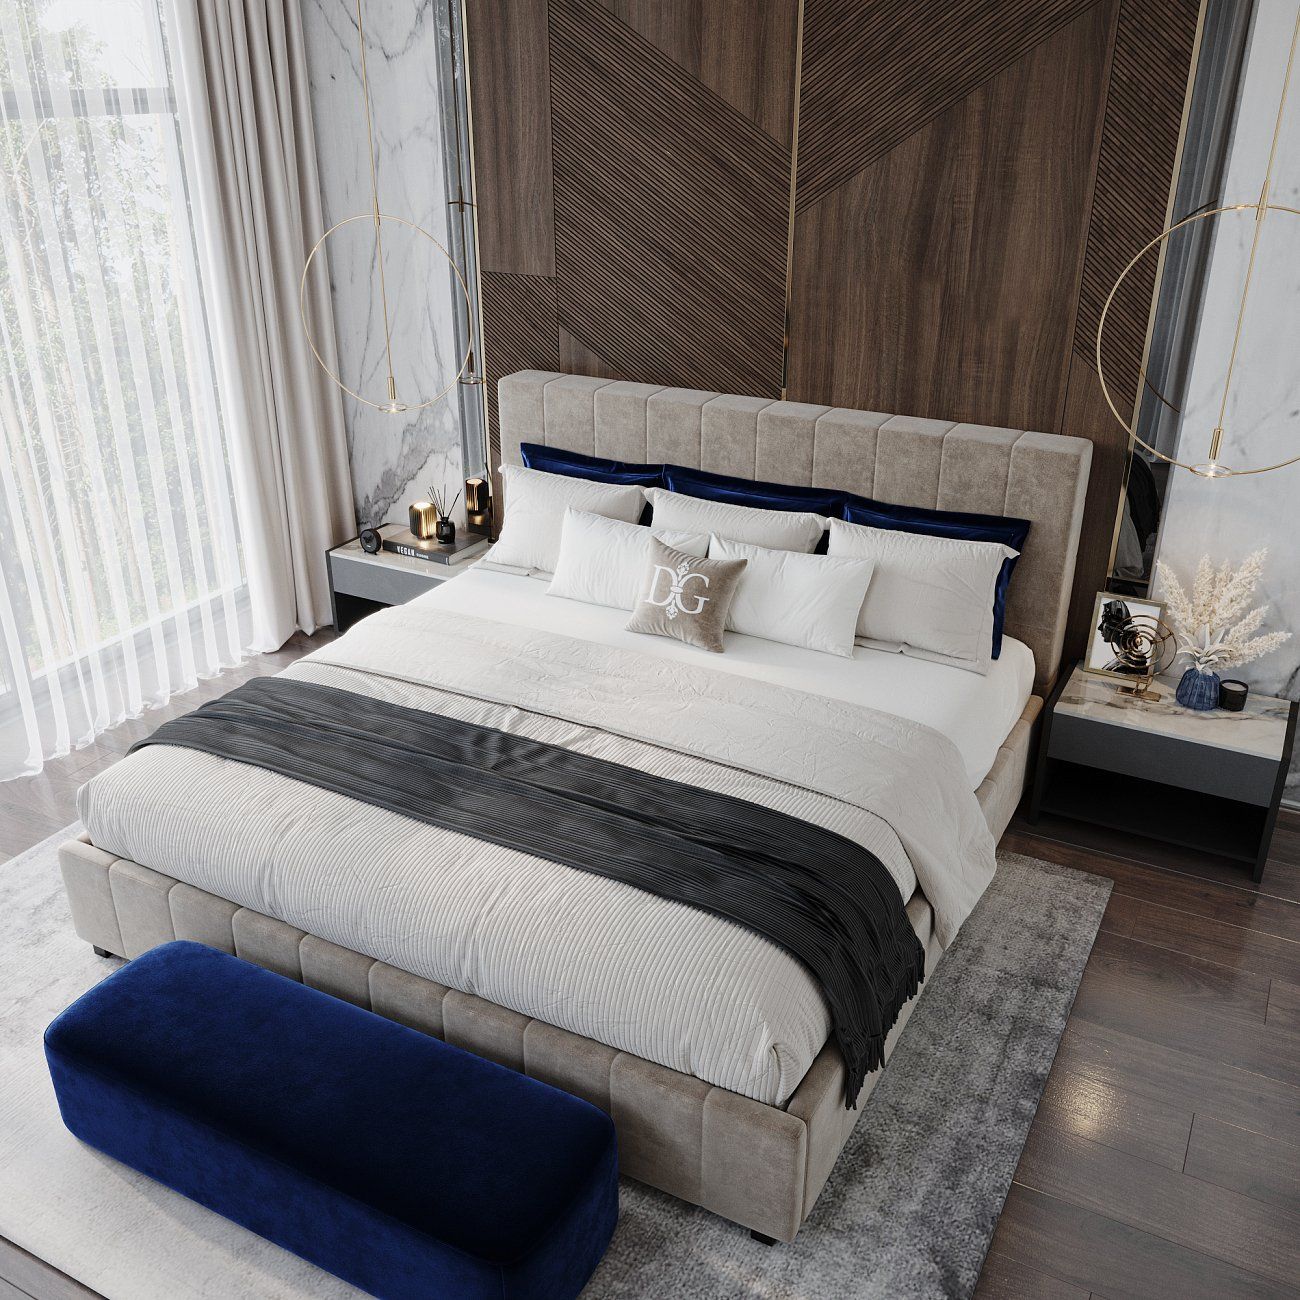 Кровать подростковая 140х200 серо-коричневая Shining Modern